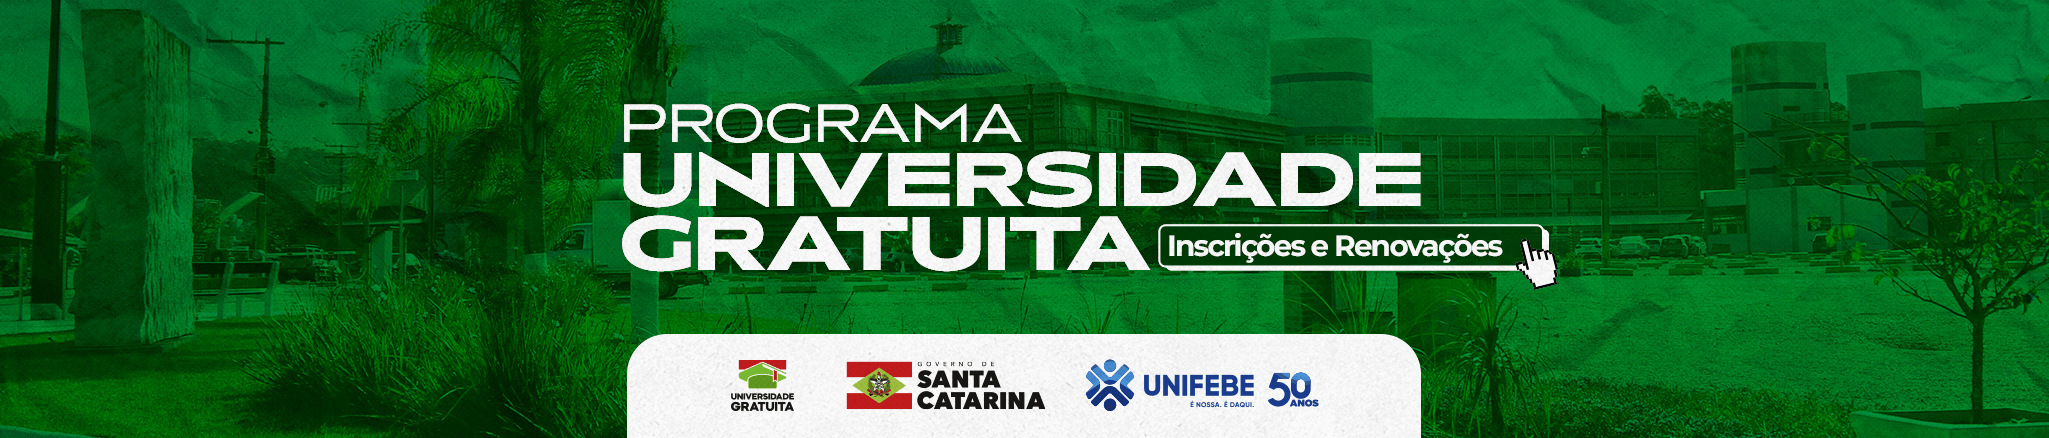 Banner desktop site Universidade Gratuita Inscrições e Renovações - com rodapé